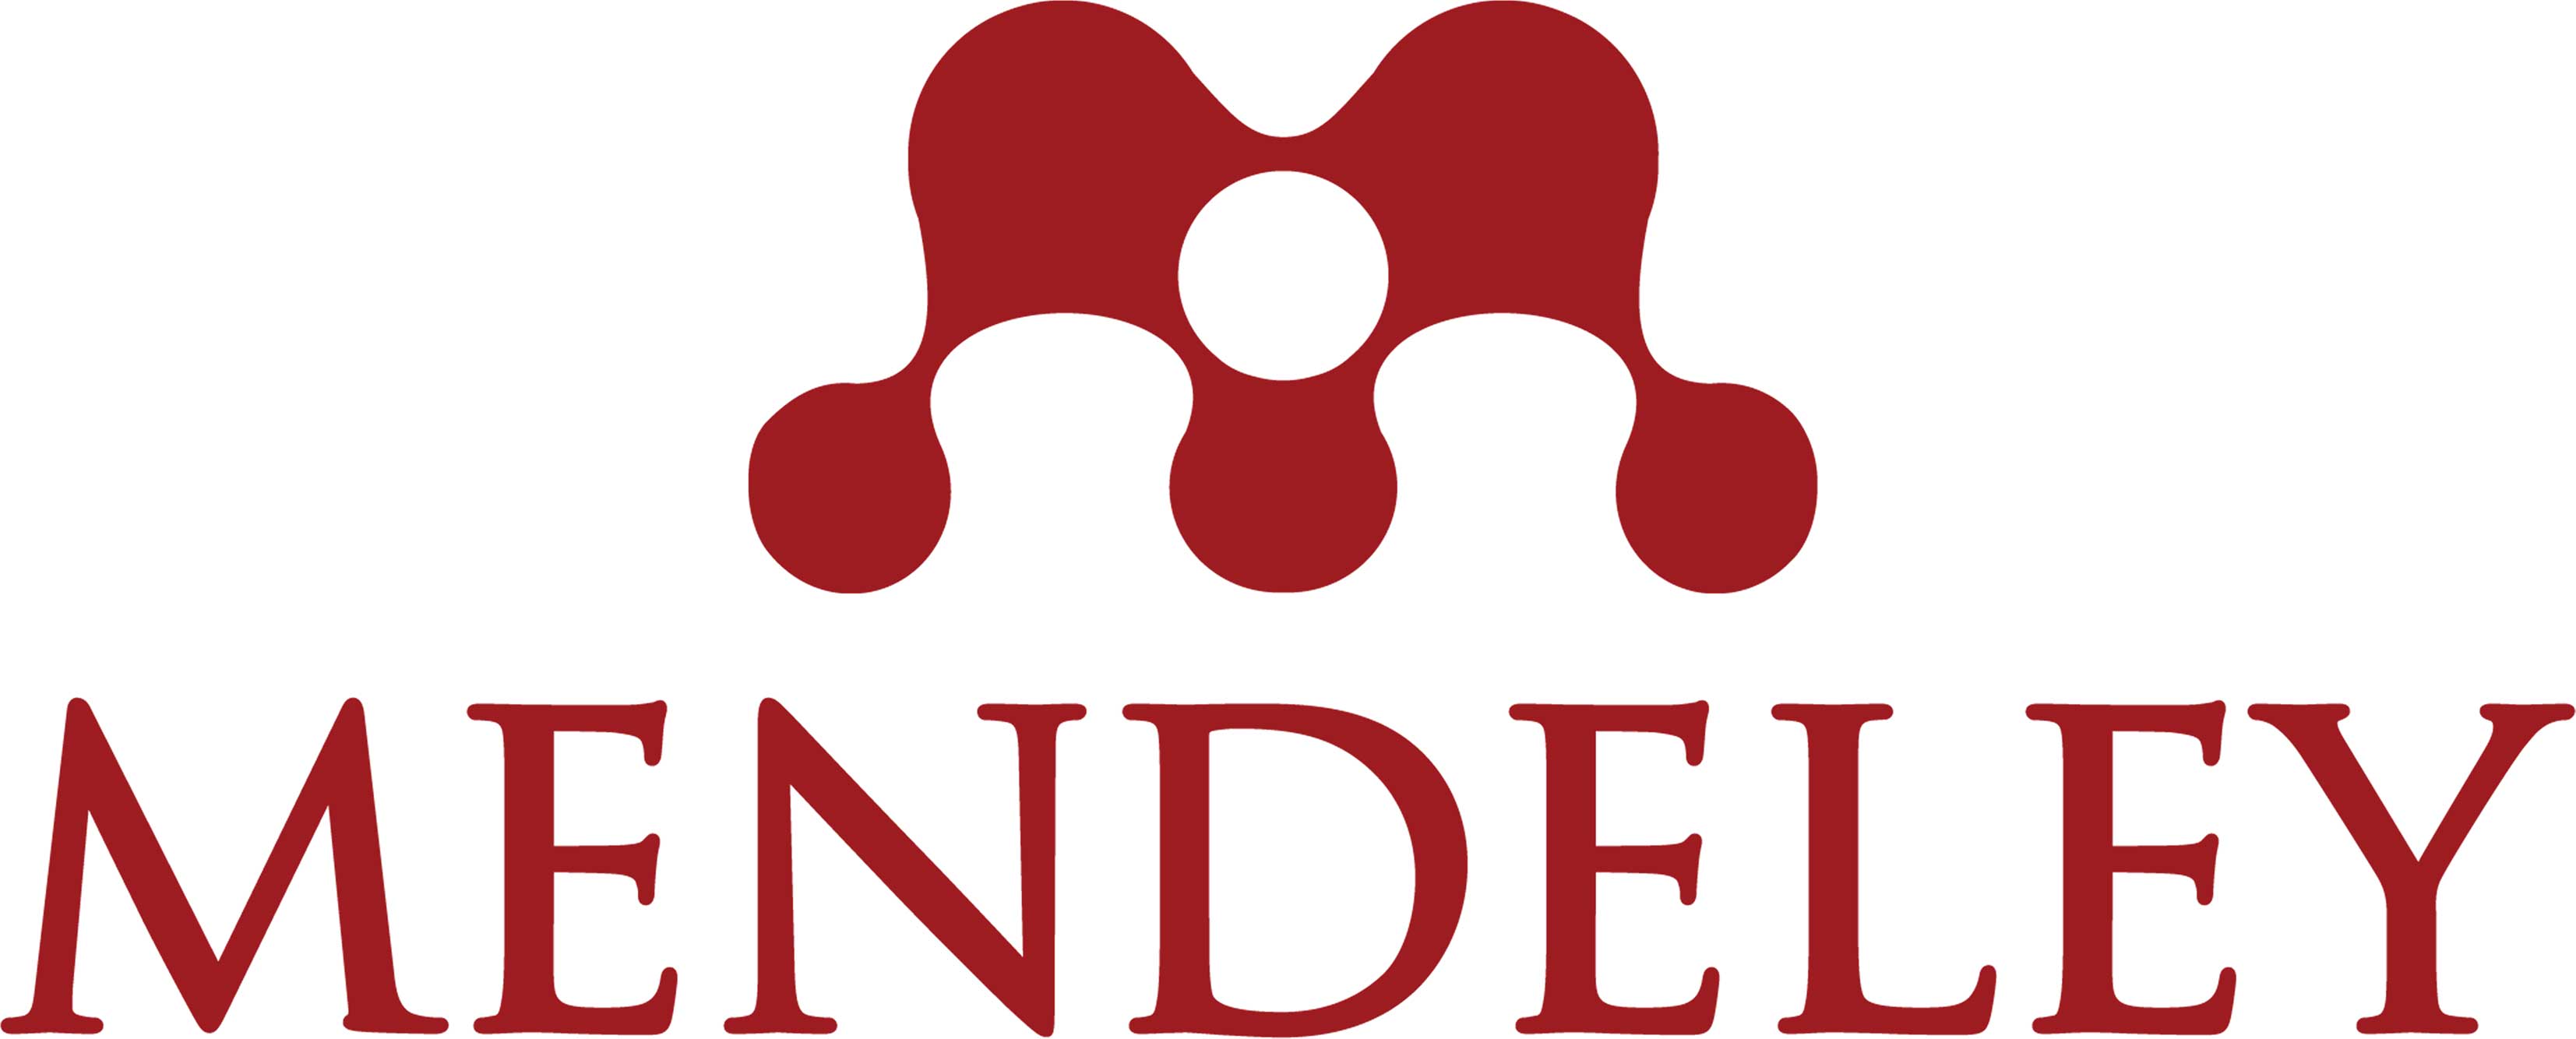 Mendeley — инструмент управления персональной научной библиотекой и референс-менеджер